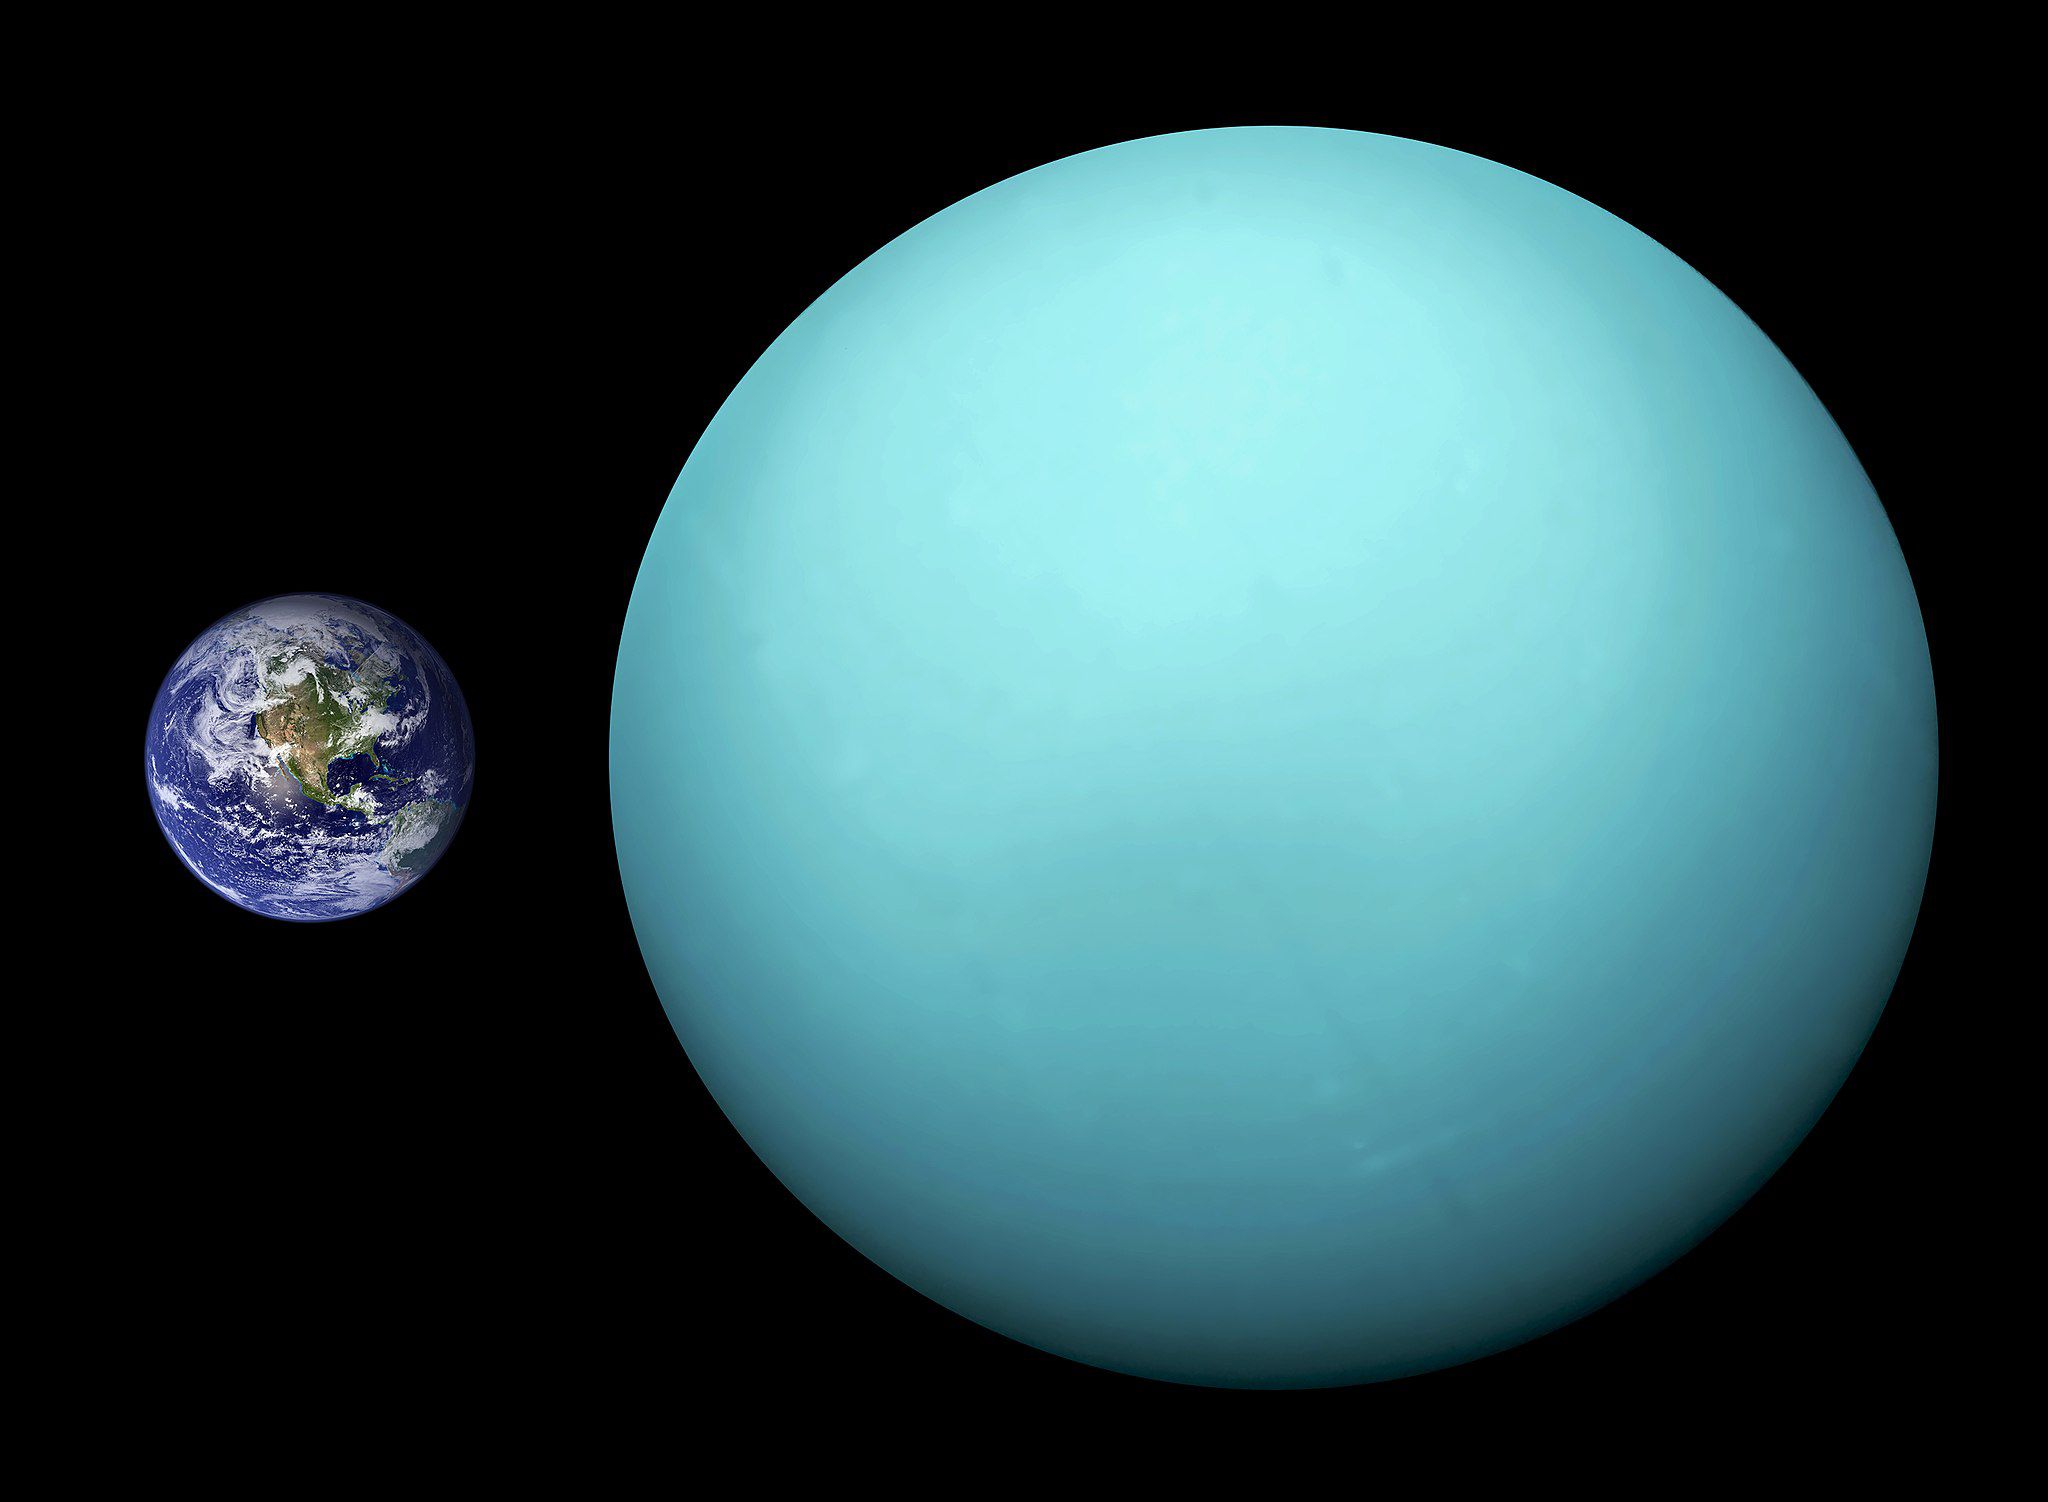 una comparación de tamaños entre Urano y el planeta Tierra